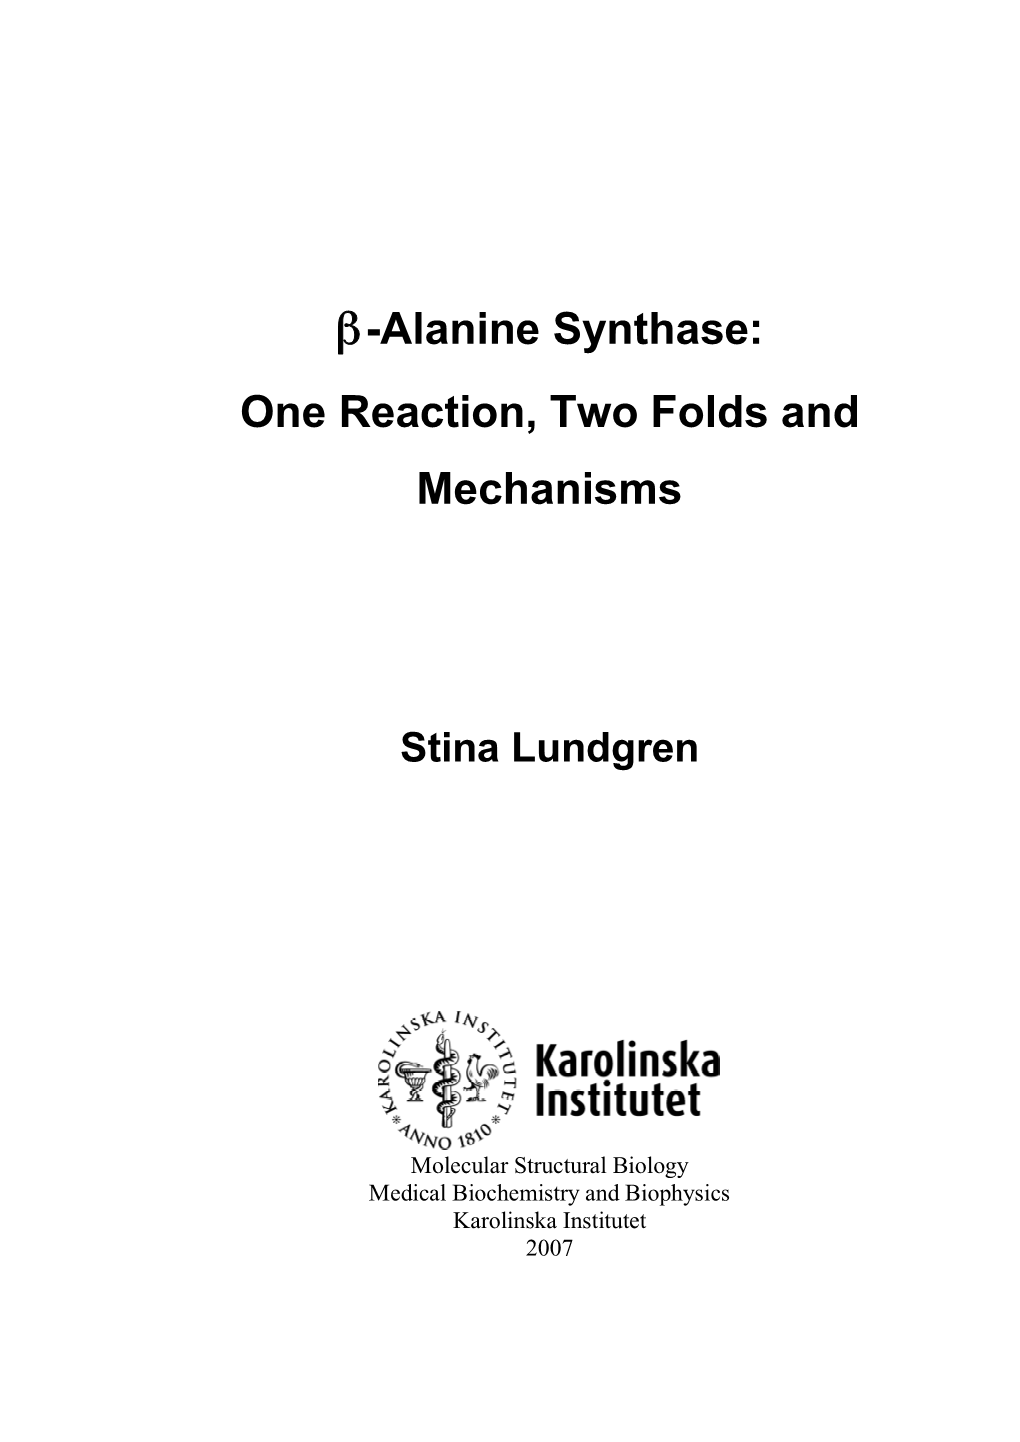 Β-Alanine Synthase: One Reaction, Two Folds and Mechanisms